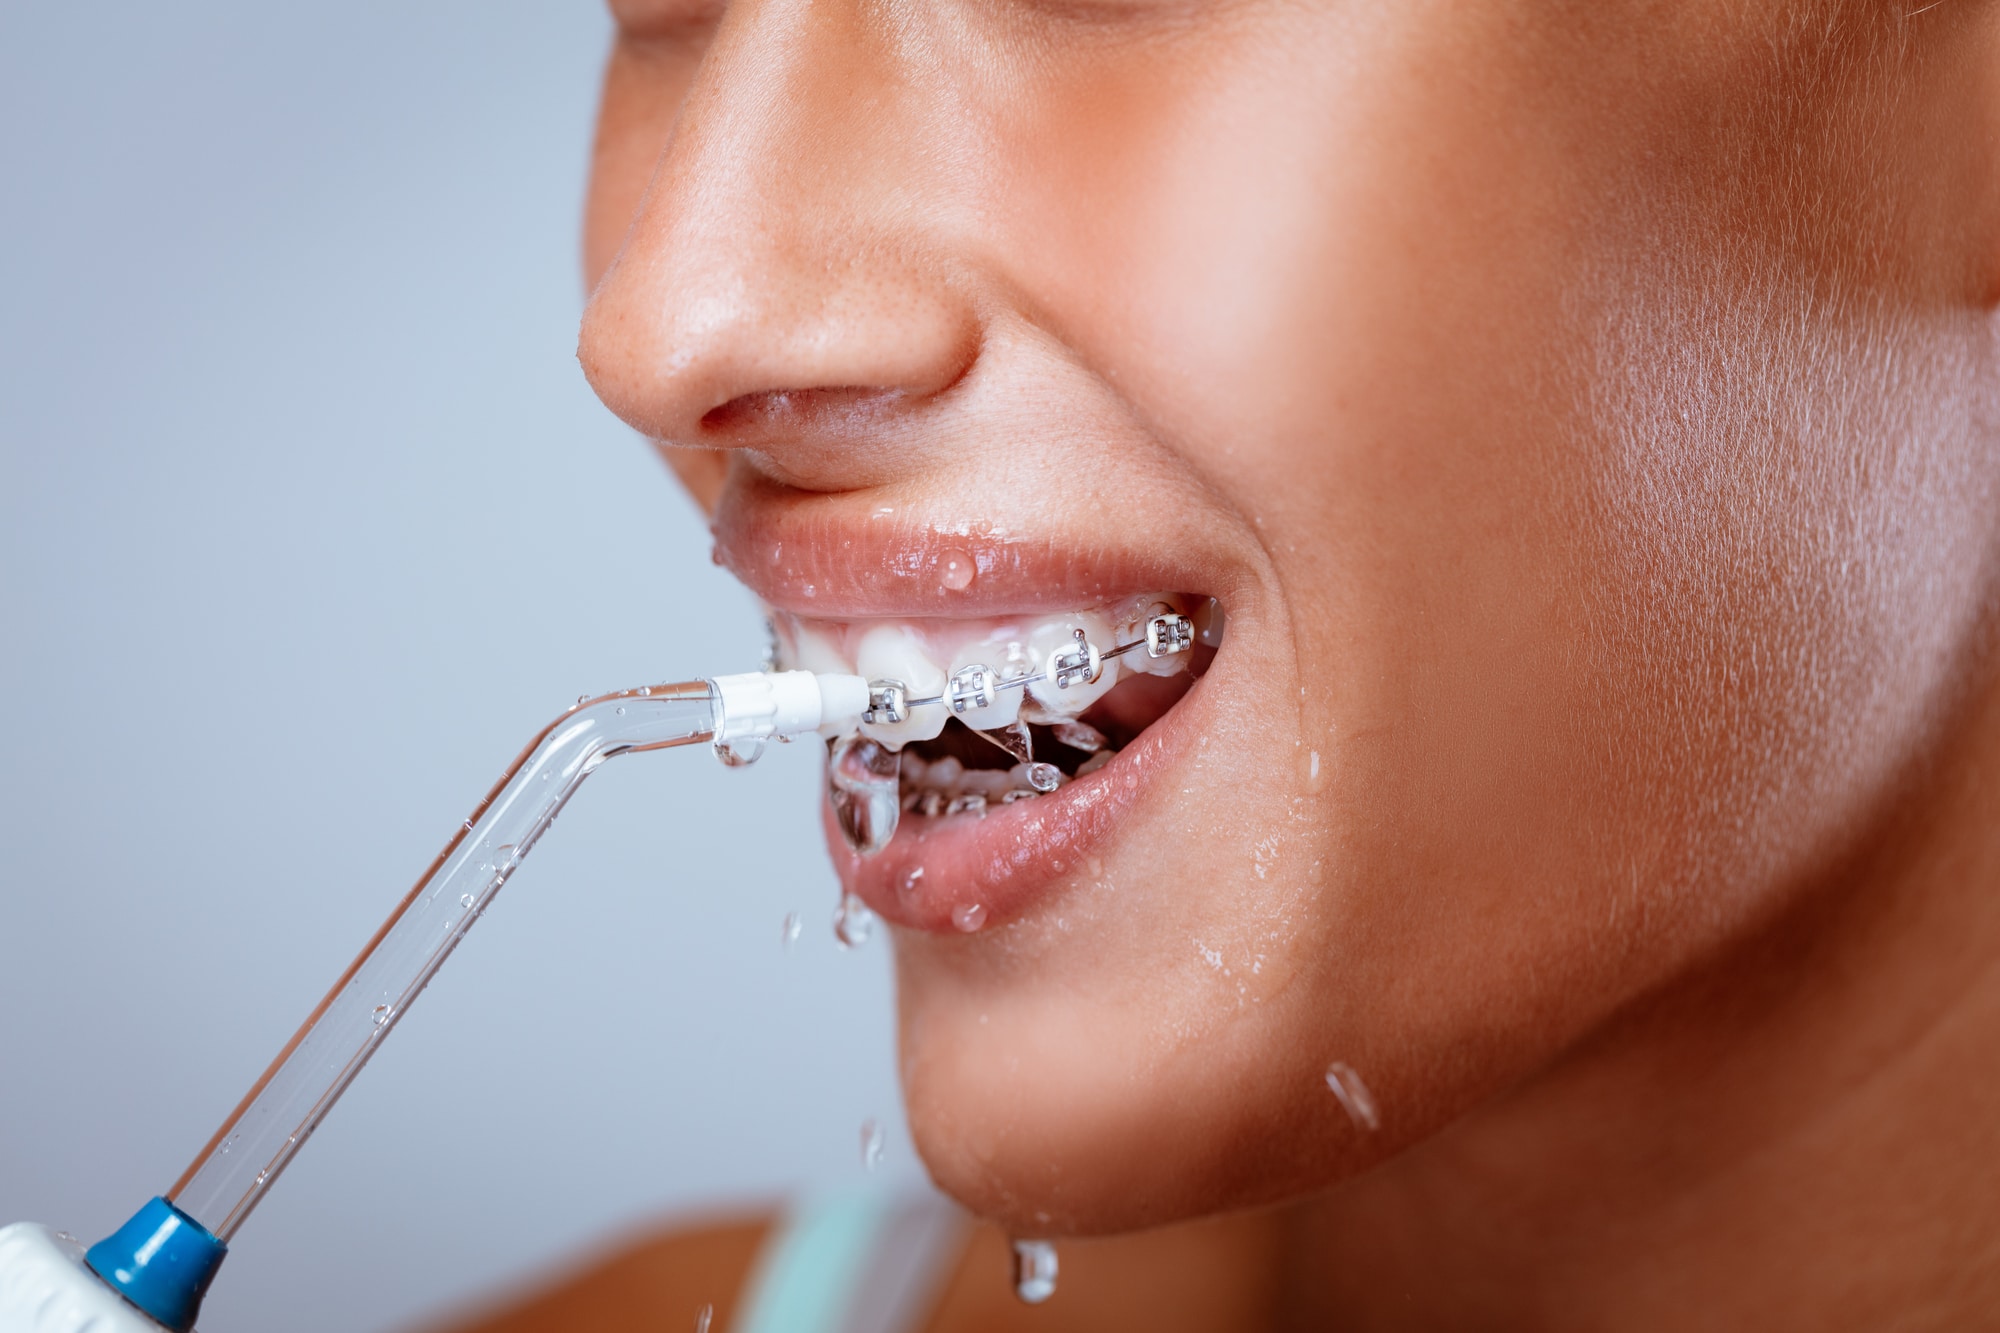 Tăm nước có tác dụng lớn trong việc làm sạch mảng bám trên răng